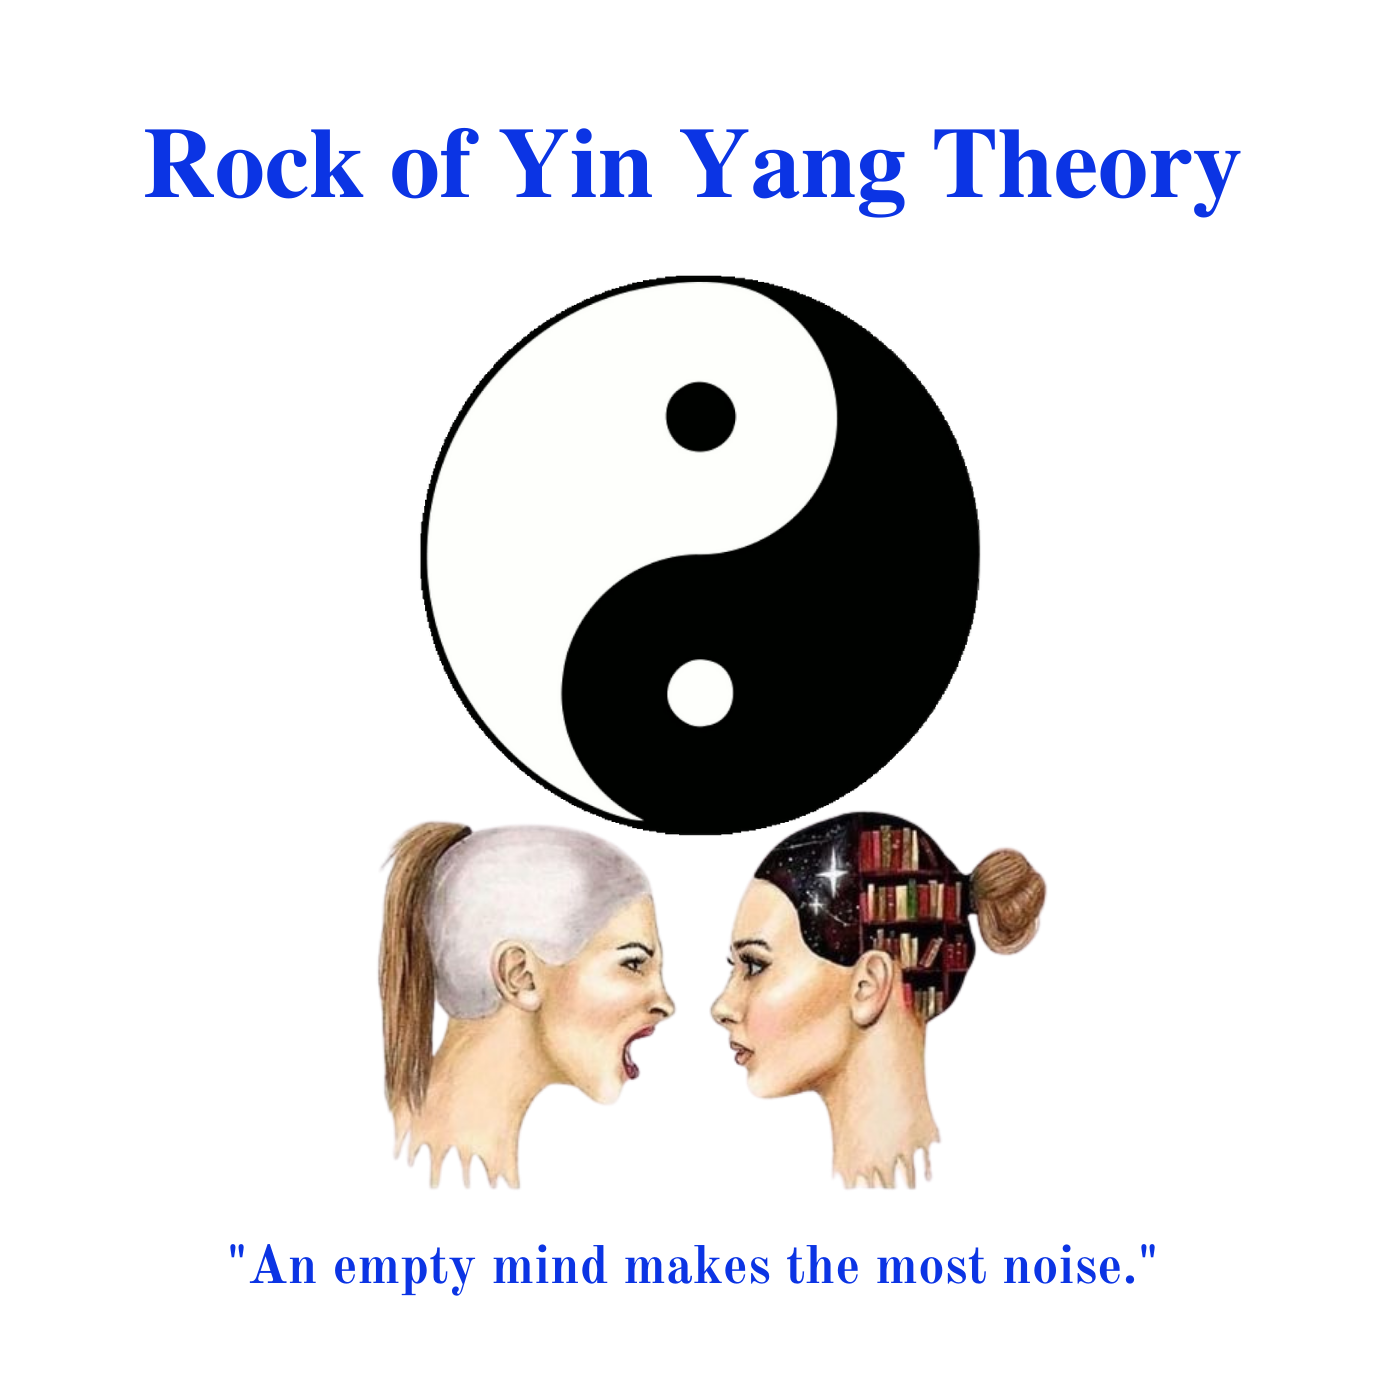 * Rock of Yin Yang Theory